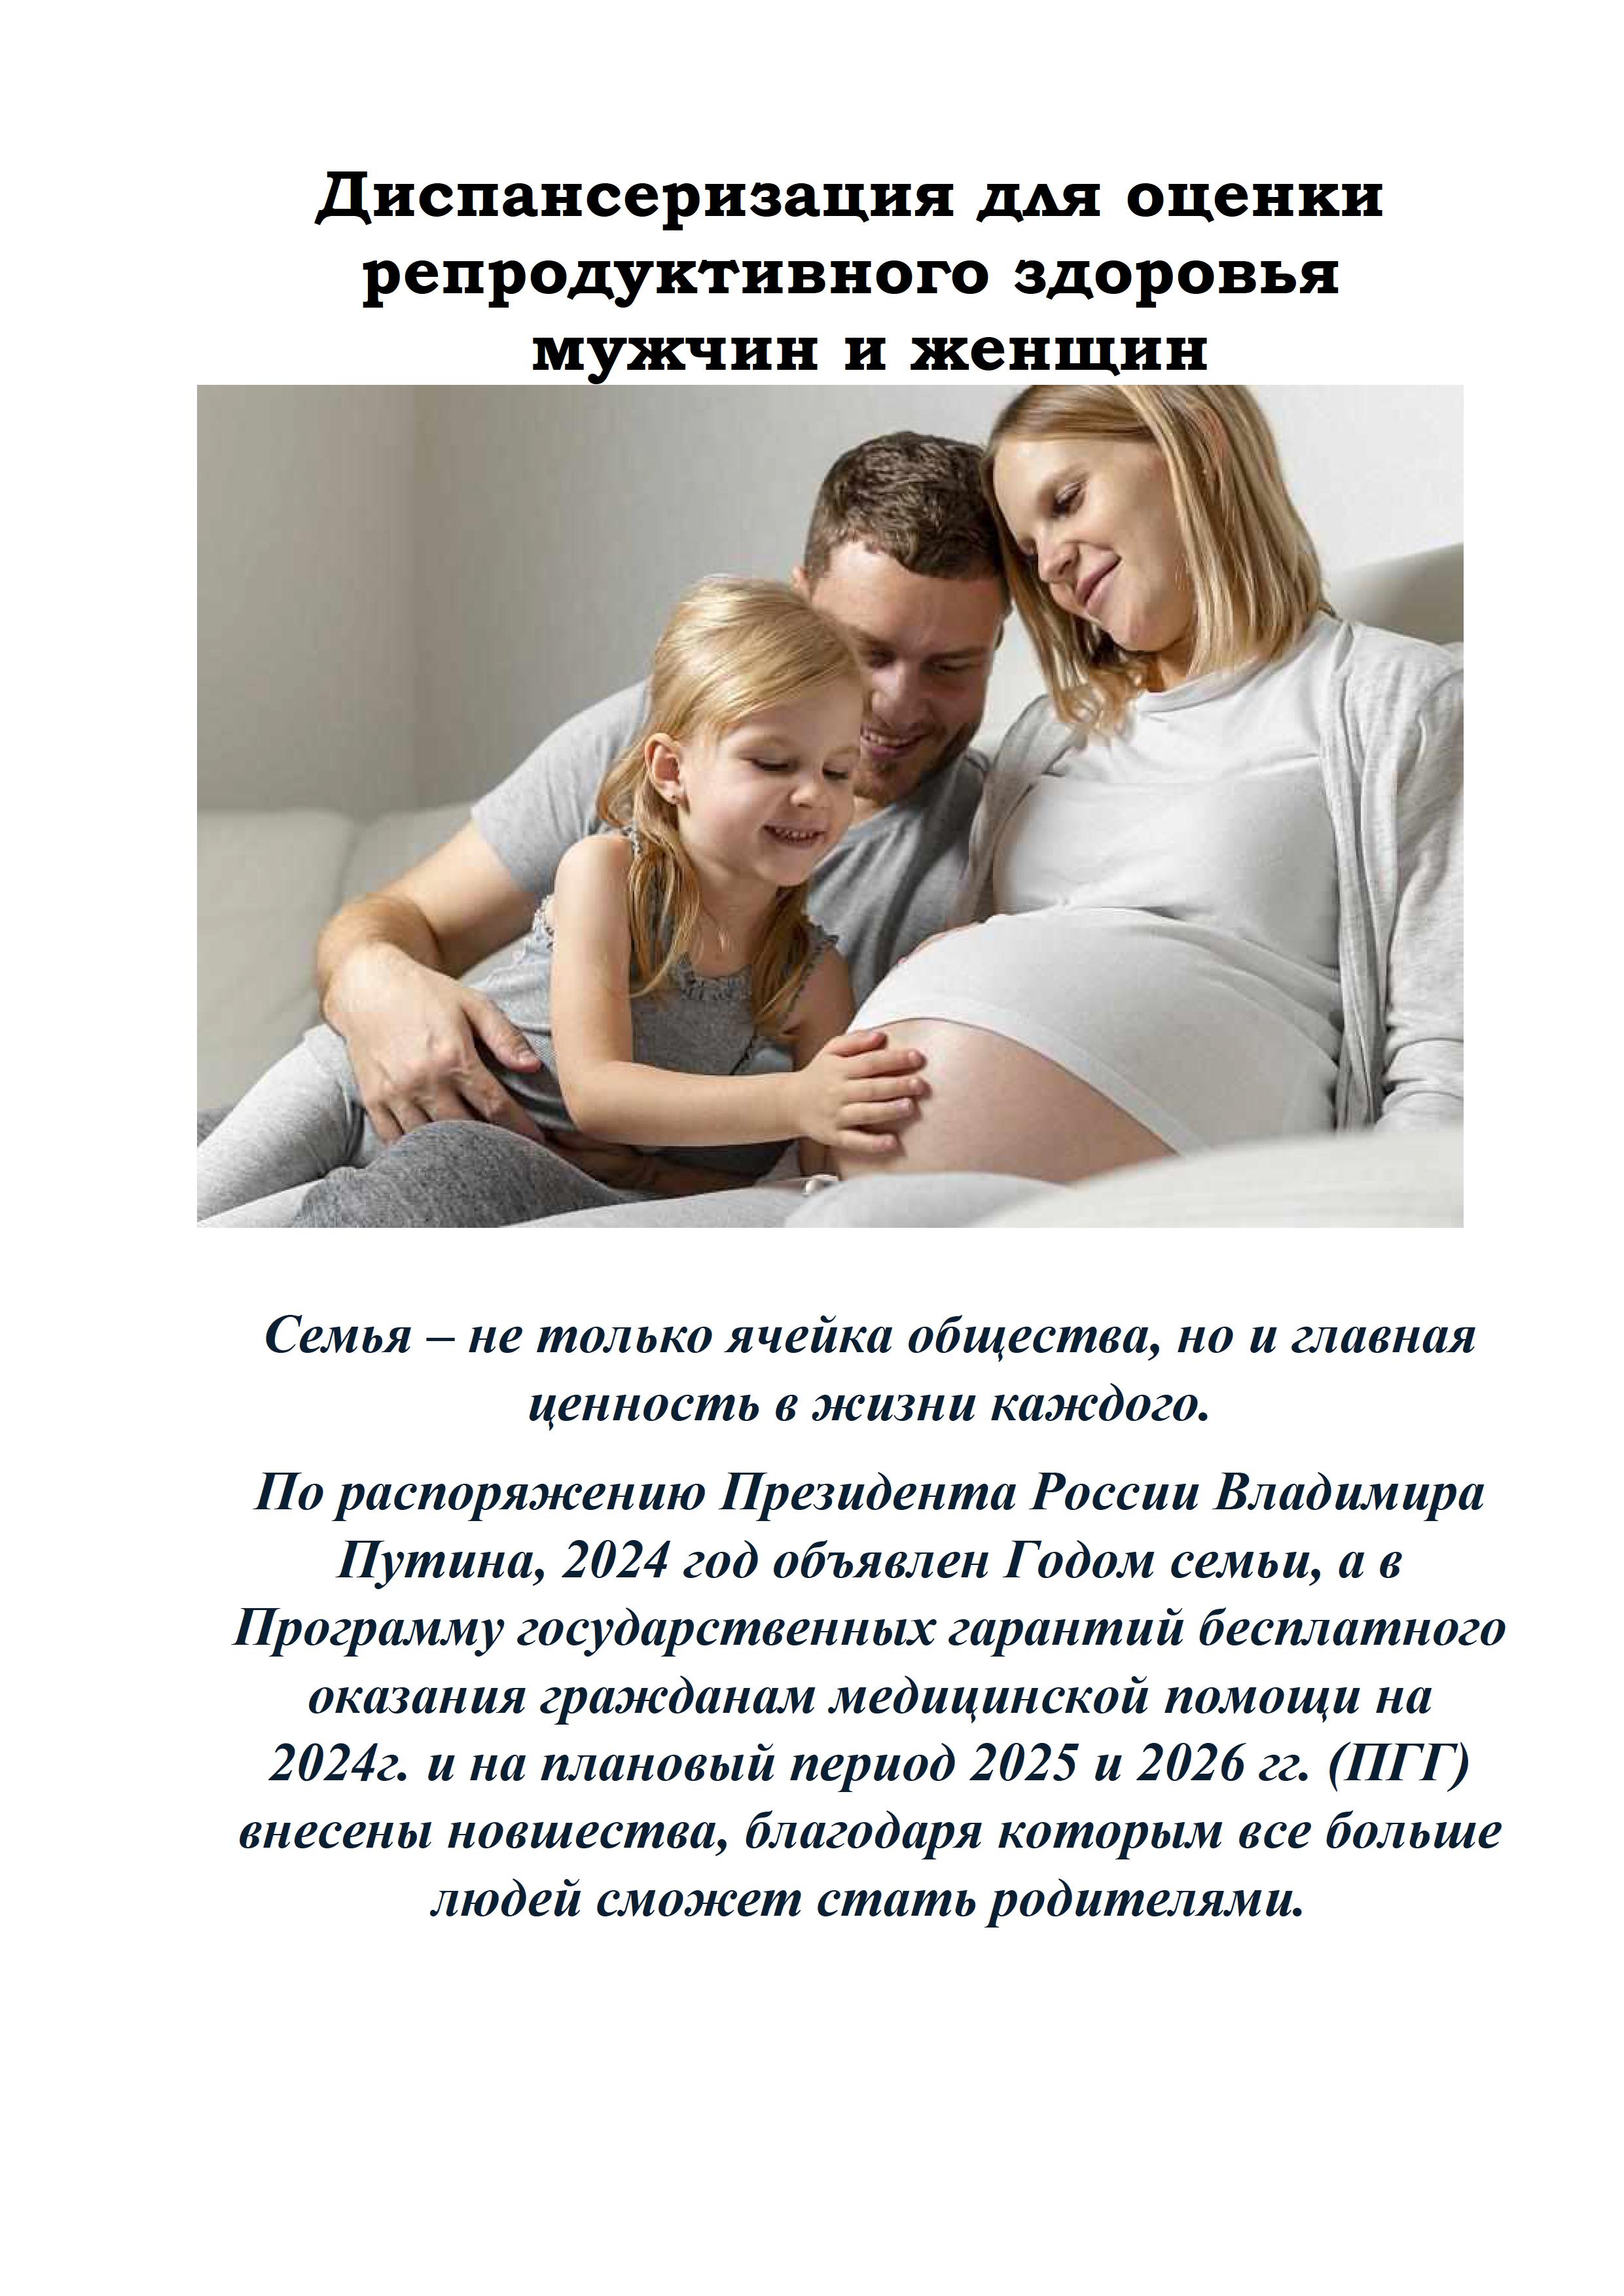 1Диспансеризация для оценки репродуктивного здоровья статья 0001